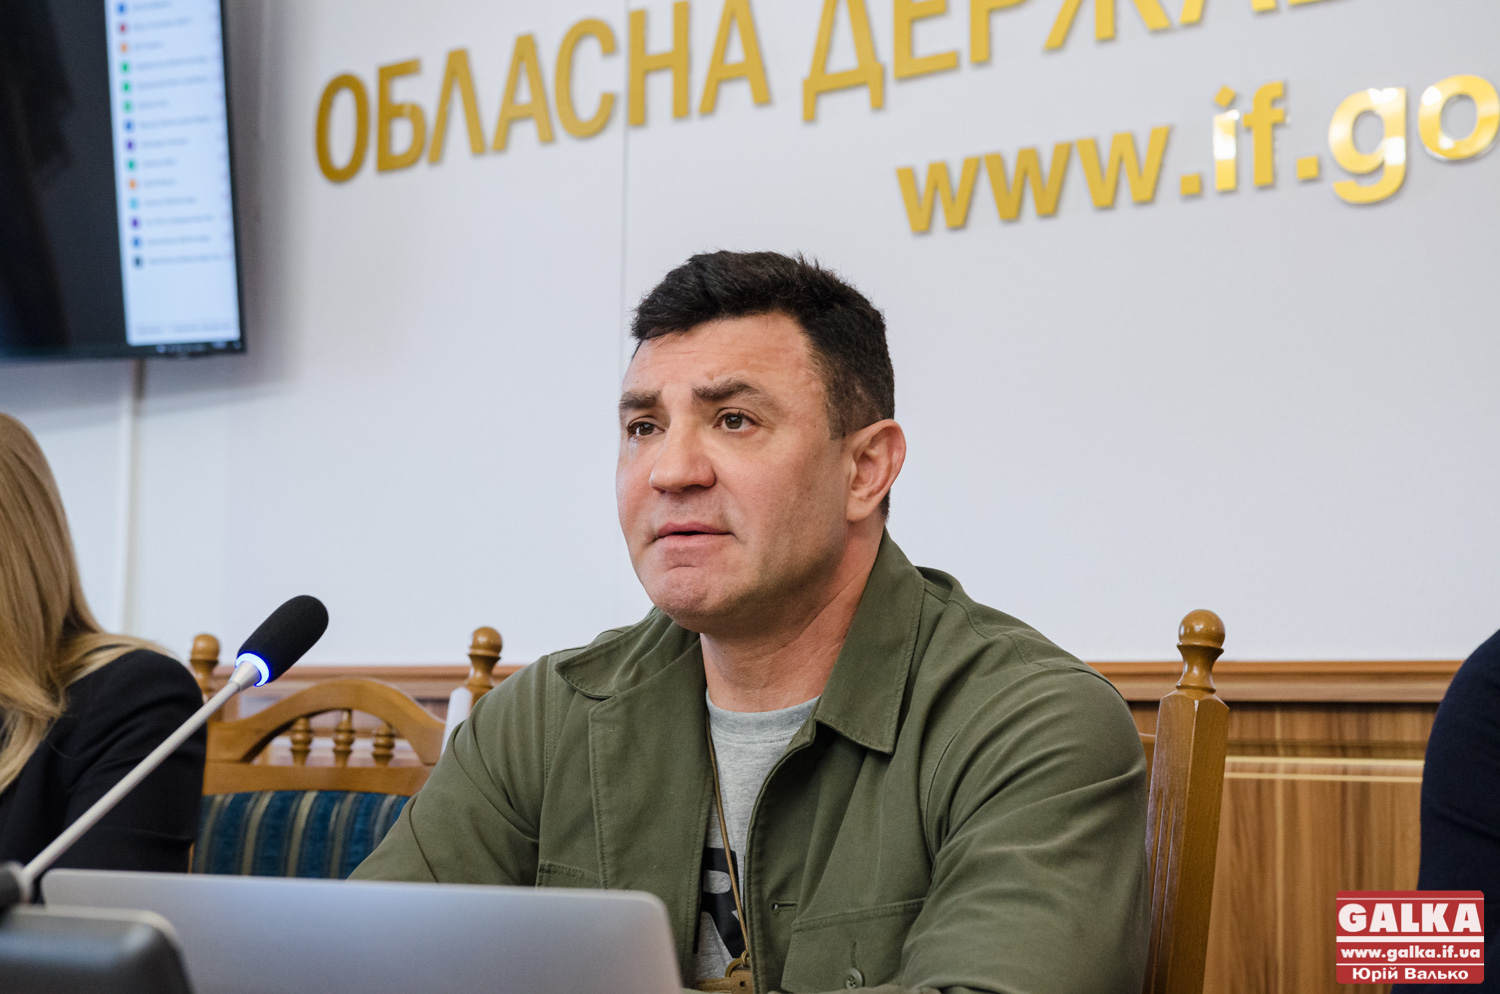 Нардеп Тищенко заявив, що йому погрожували зброєю під Франківськом – на обранця написали зустрічну заяву